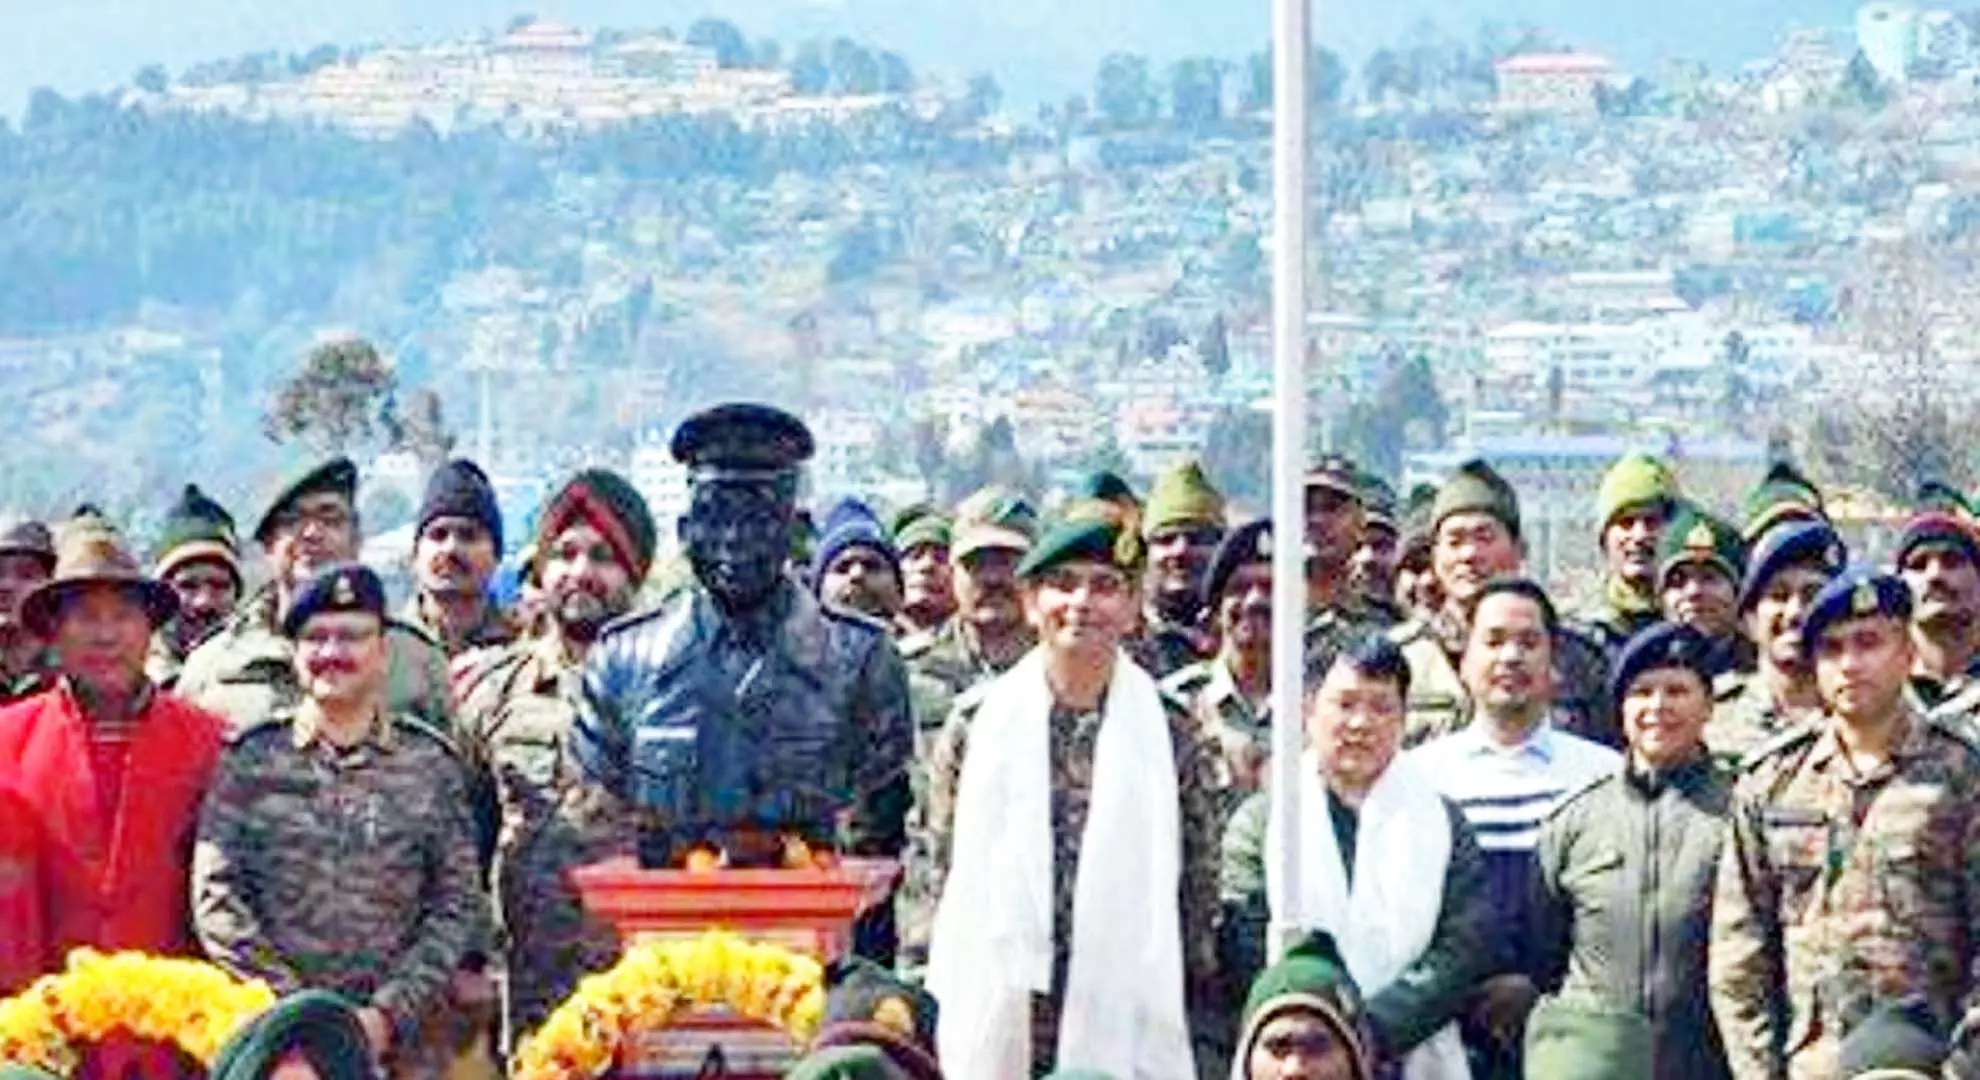 मेजर बॉब खटिंग दिवस अरुणाचल प्रदेश के तवांग जिले में मनाया गया